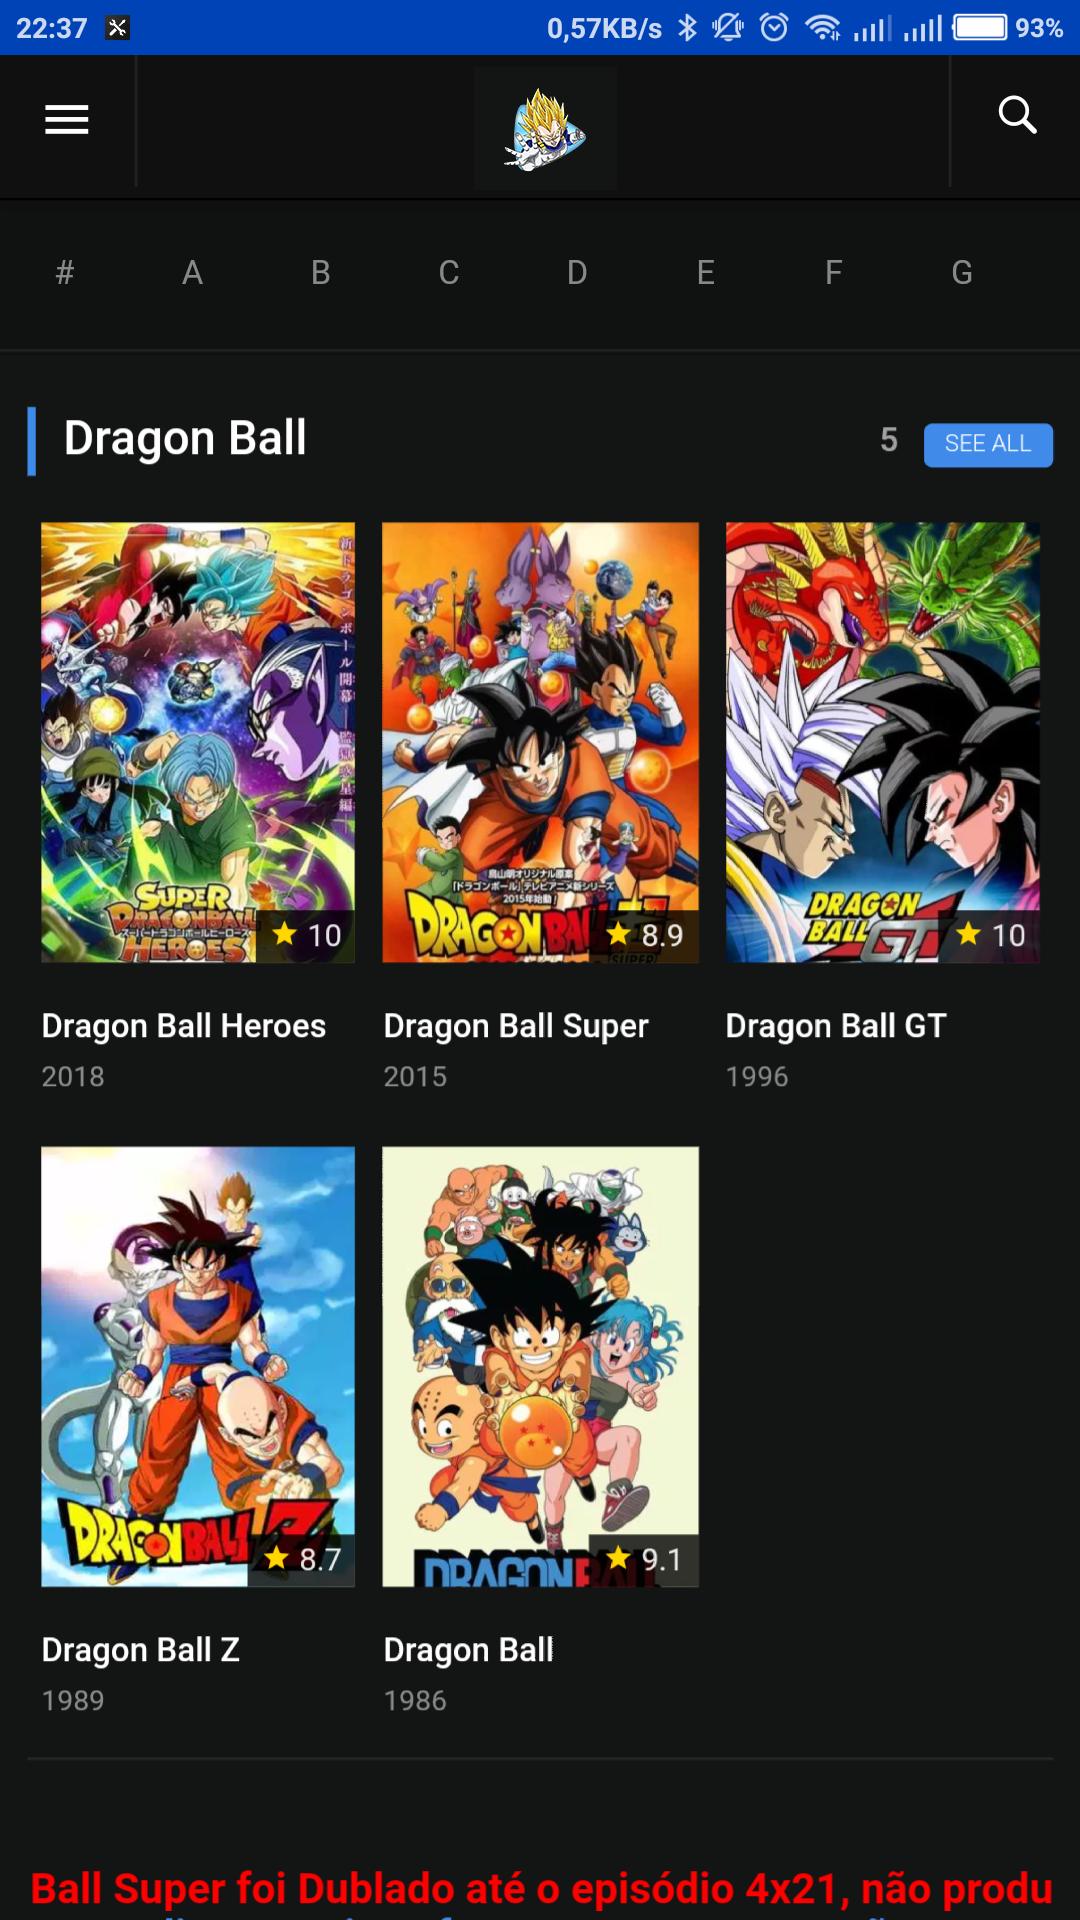 Dragon Ball Vídeos - Assistir Online Grátis APK for Android Download